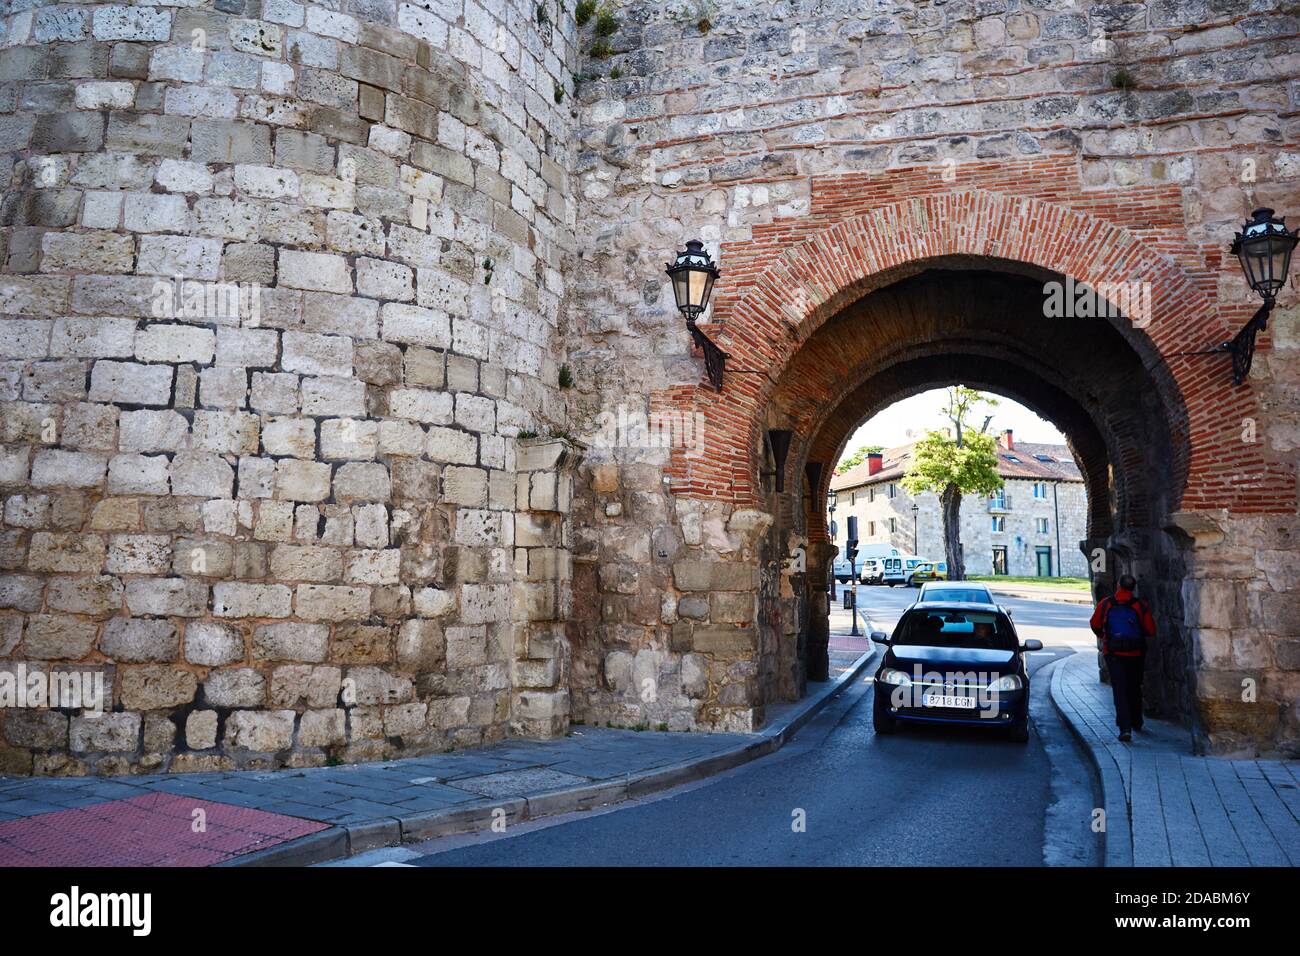 L'arche de San Martín est l'une des portes du mur de la ville espagnole de Burgos. French Way, Way of St. James. Burgos, Castille et Leon, Espagne, E Banque D'Images